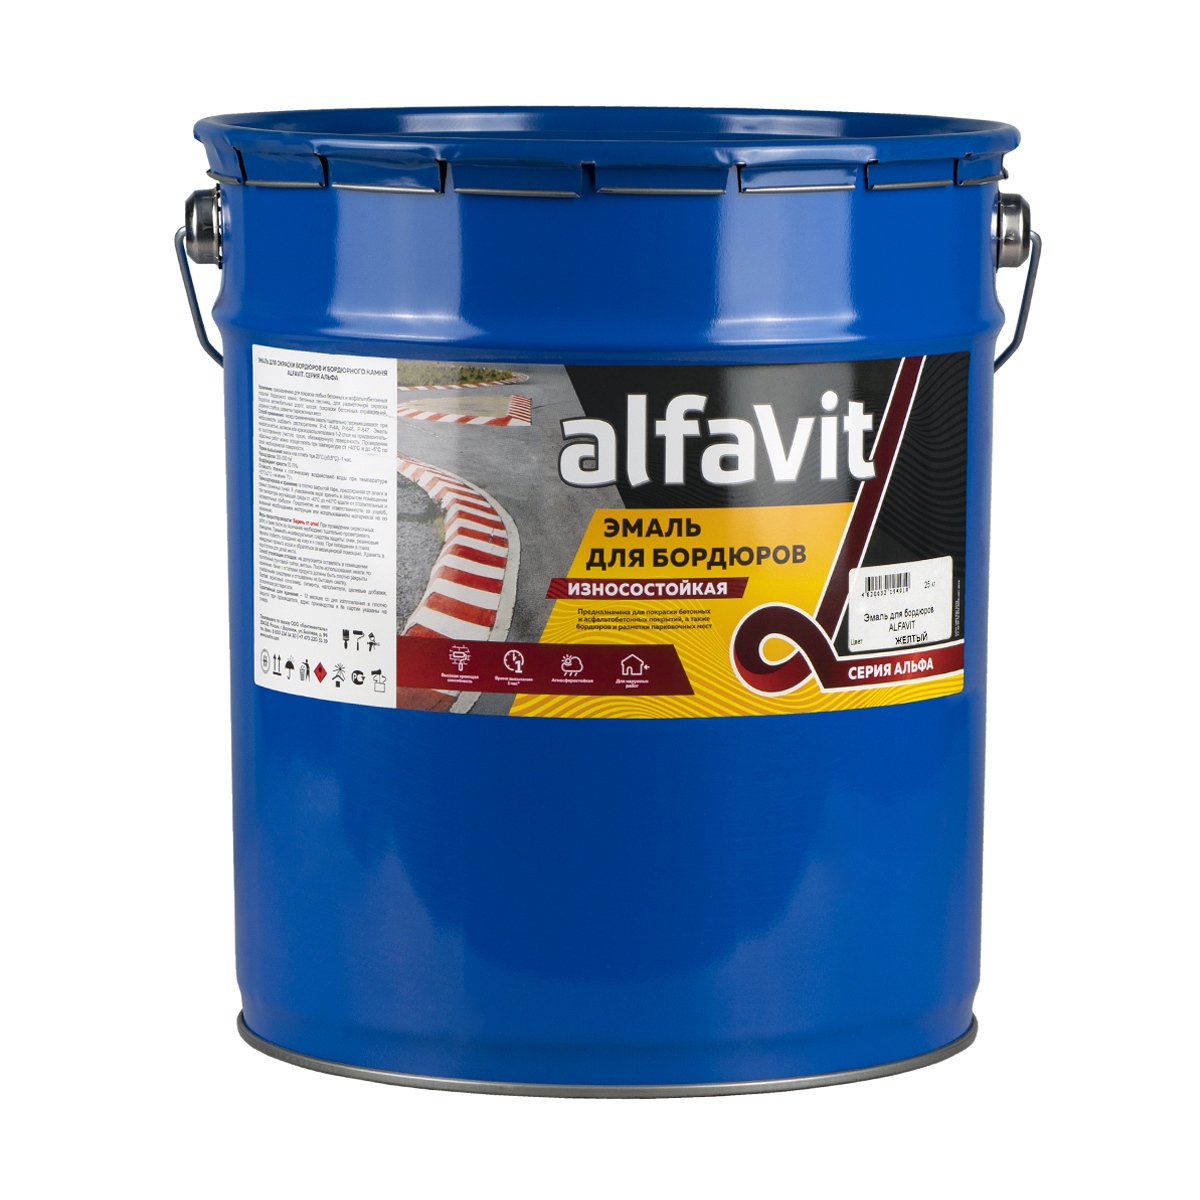 Эмаль для бордюров (износостойкая) "alfavit" желтая 25 кг (1) серия альфа